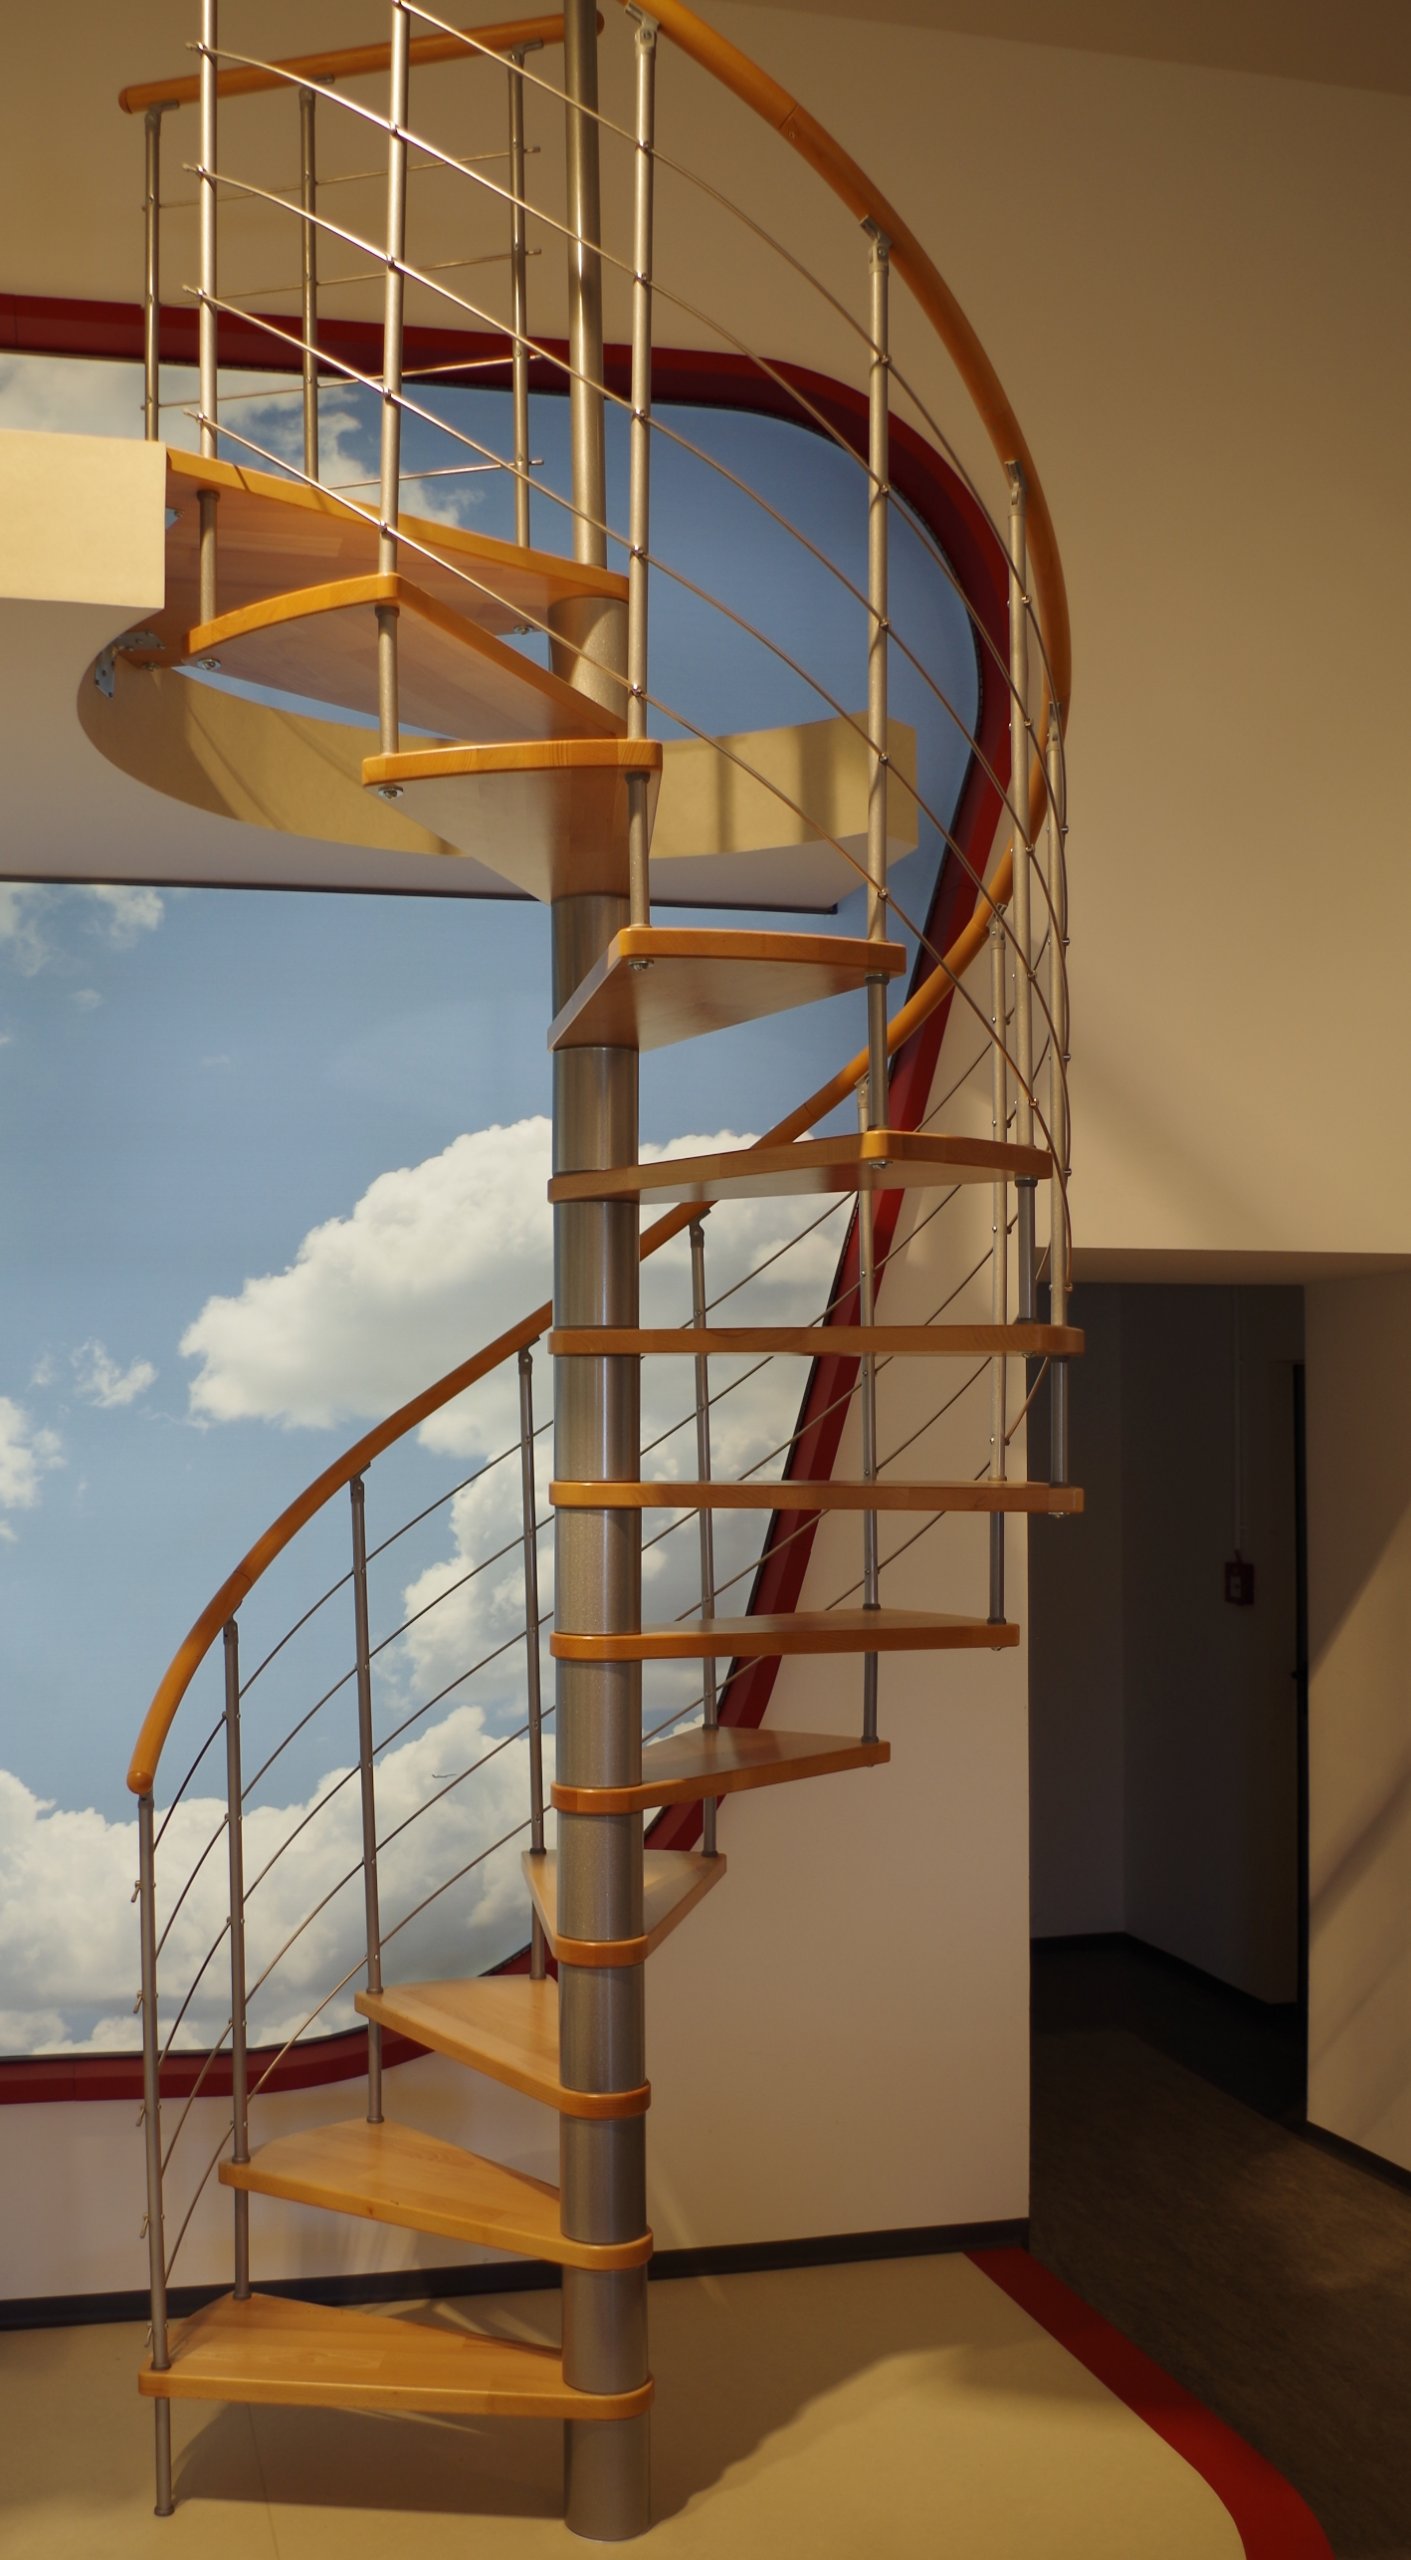 VENEZIA Spiral Staircase Silver/Beech 120cm